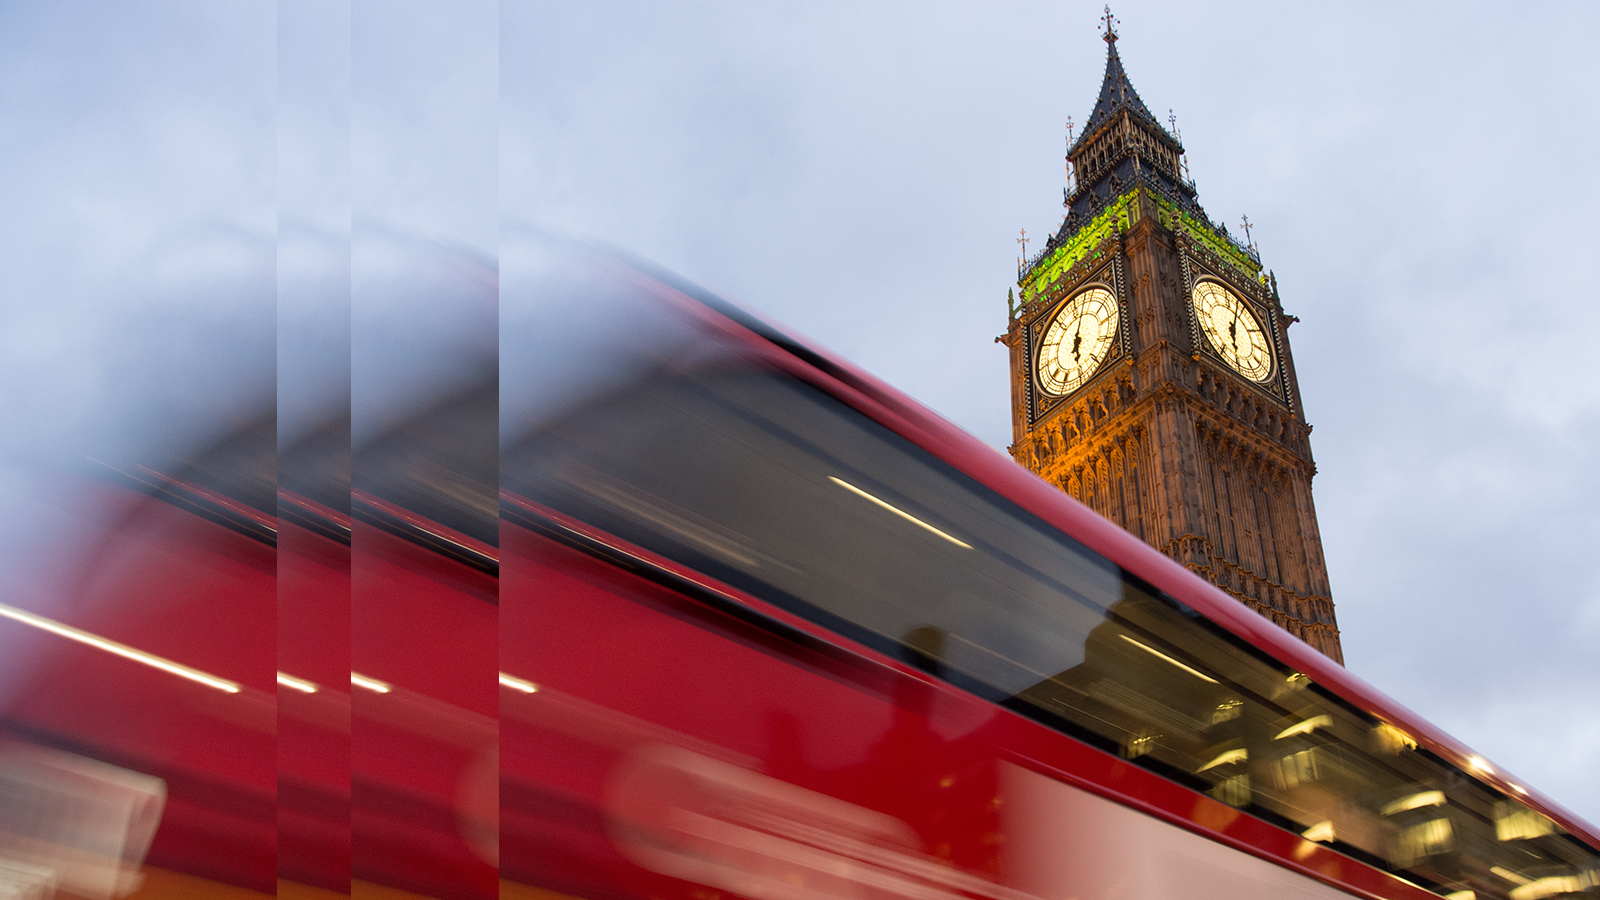 Big Ben und roter Bus in London